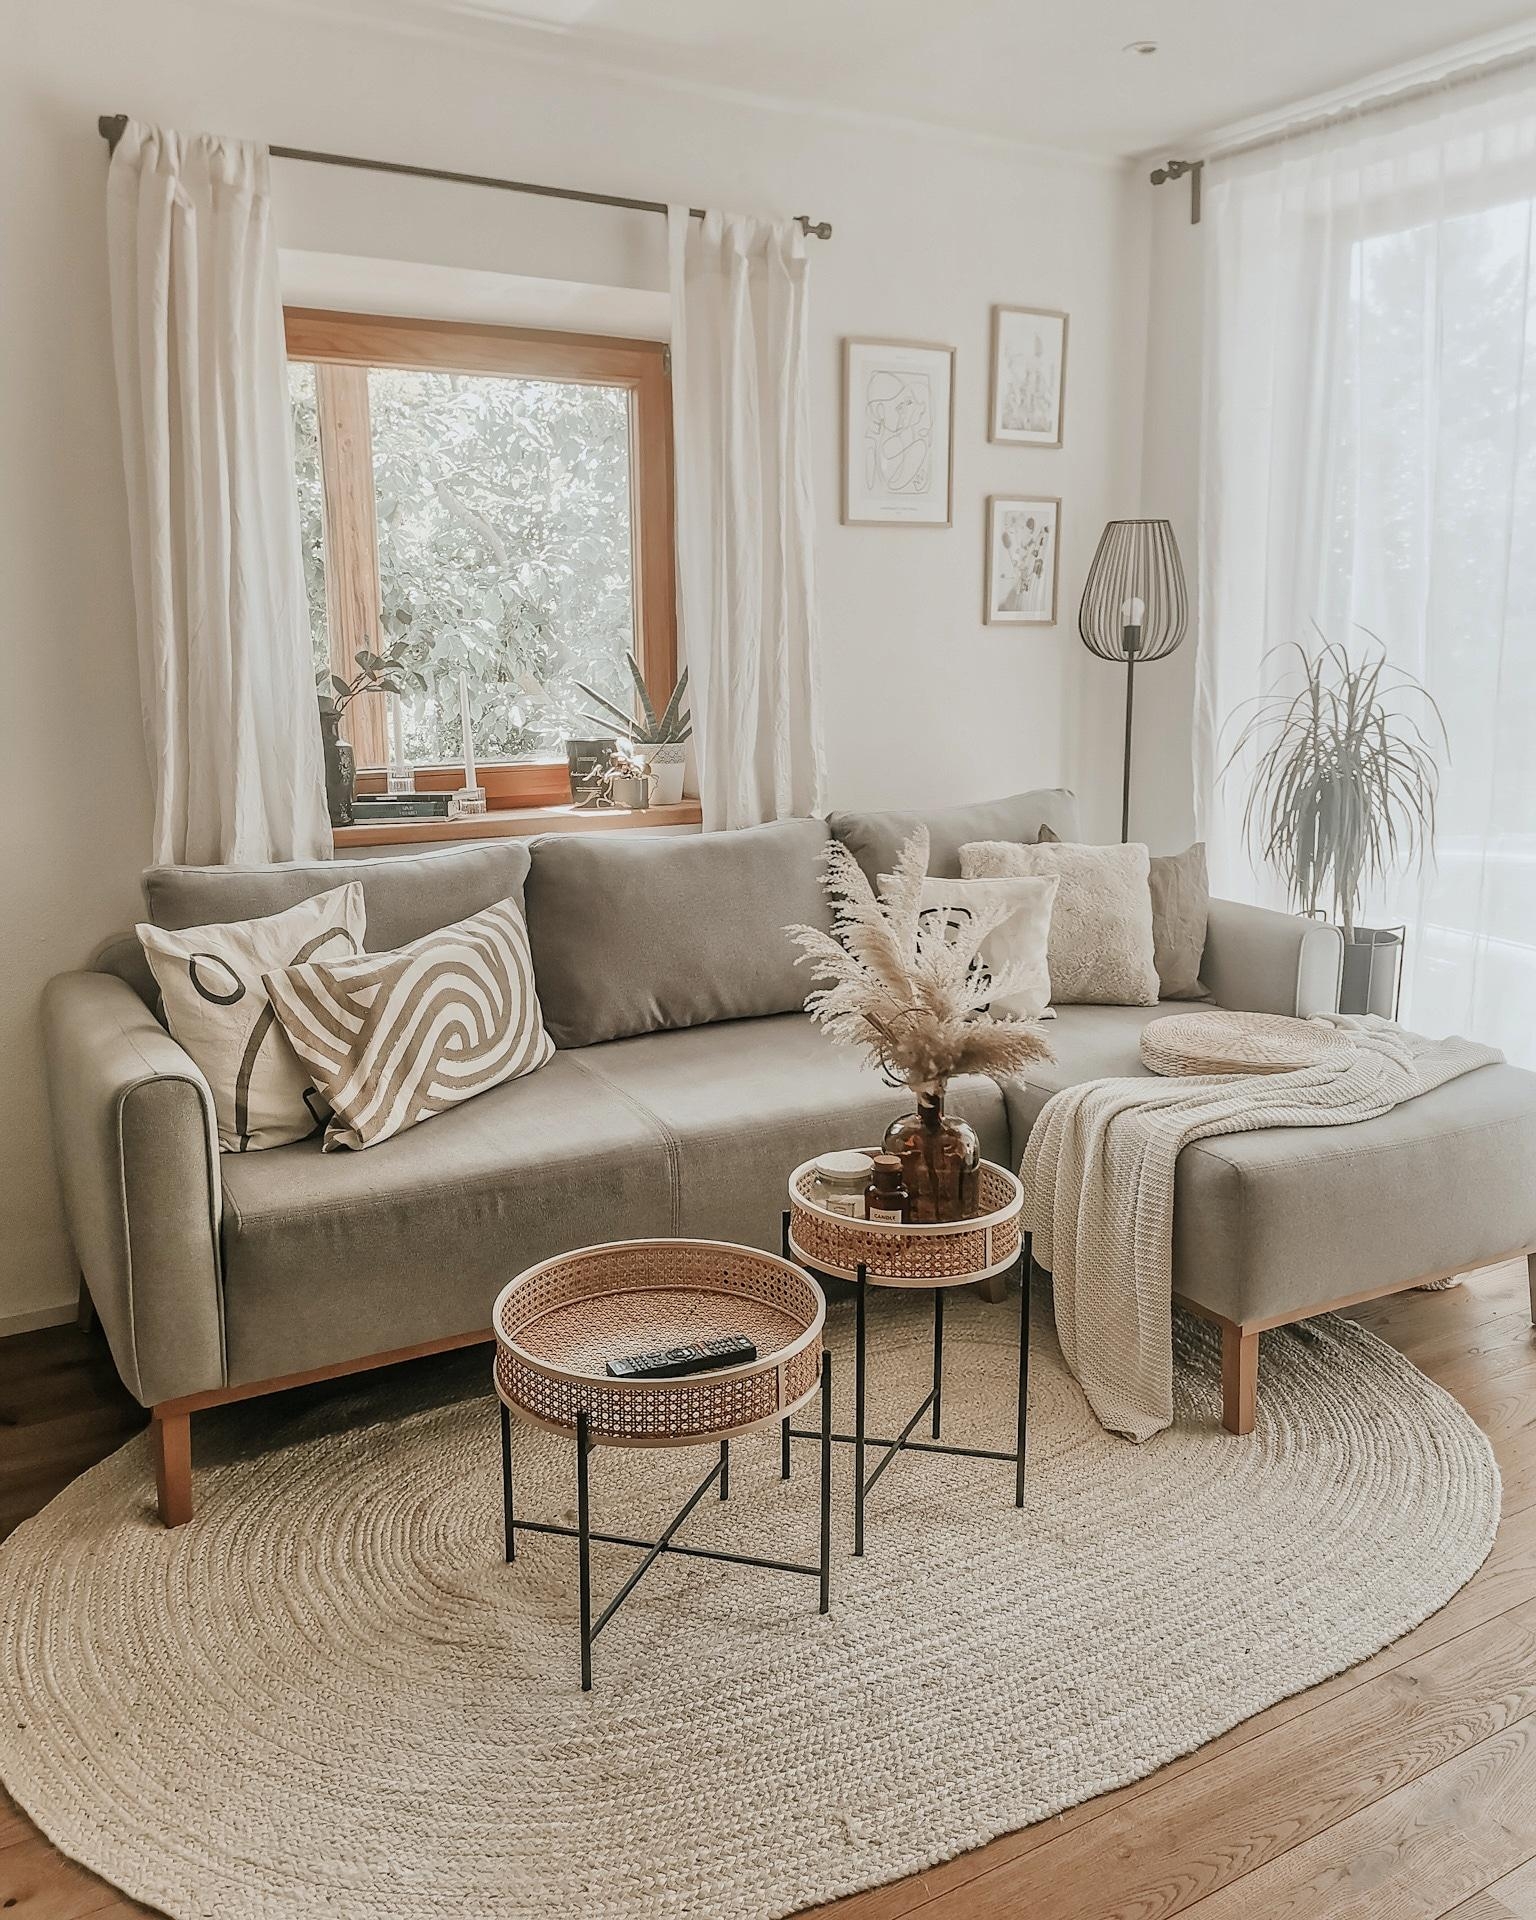 Endlich ist unser Wohnzimmer fertig ❤️
#boho #scandihome #wohnzimmer #minimalism #whiteinterior #neutral #interiordesign